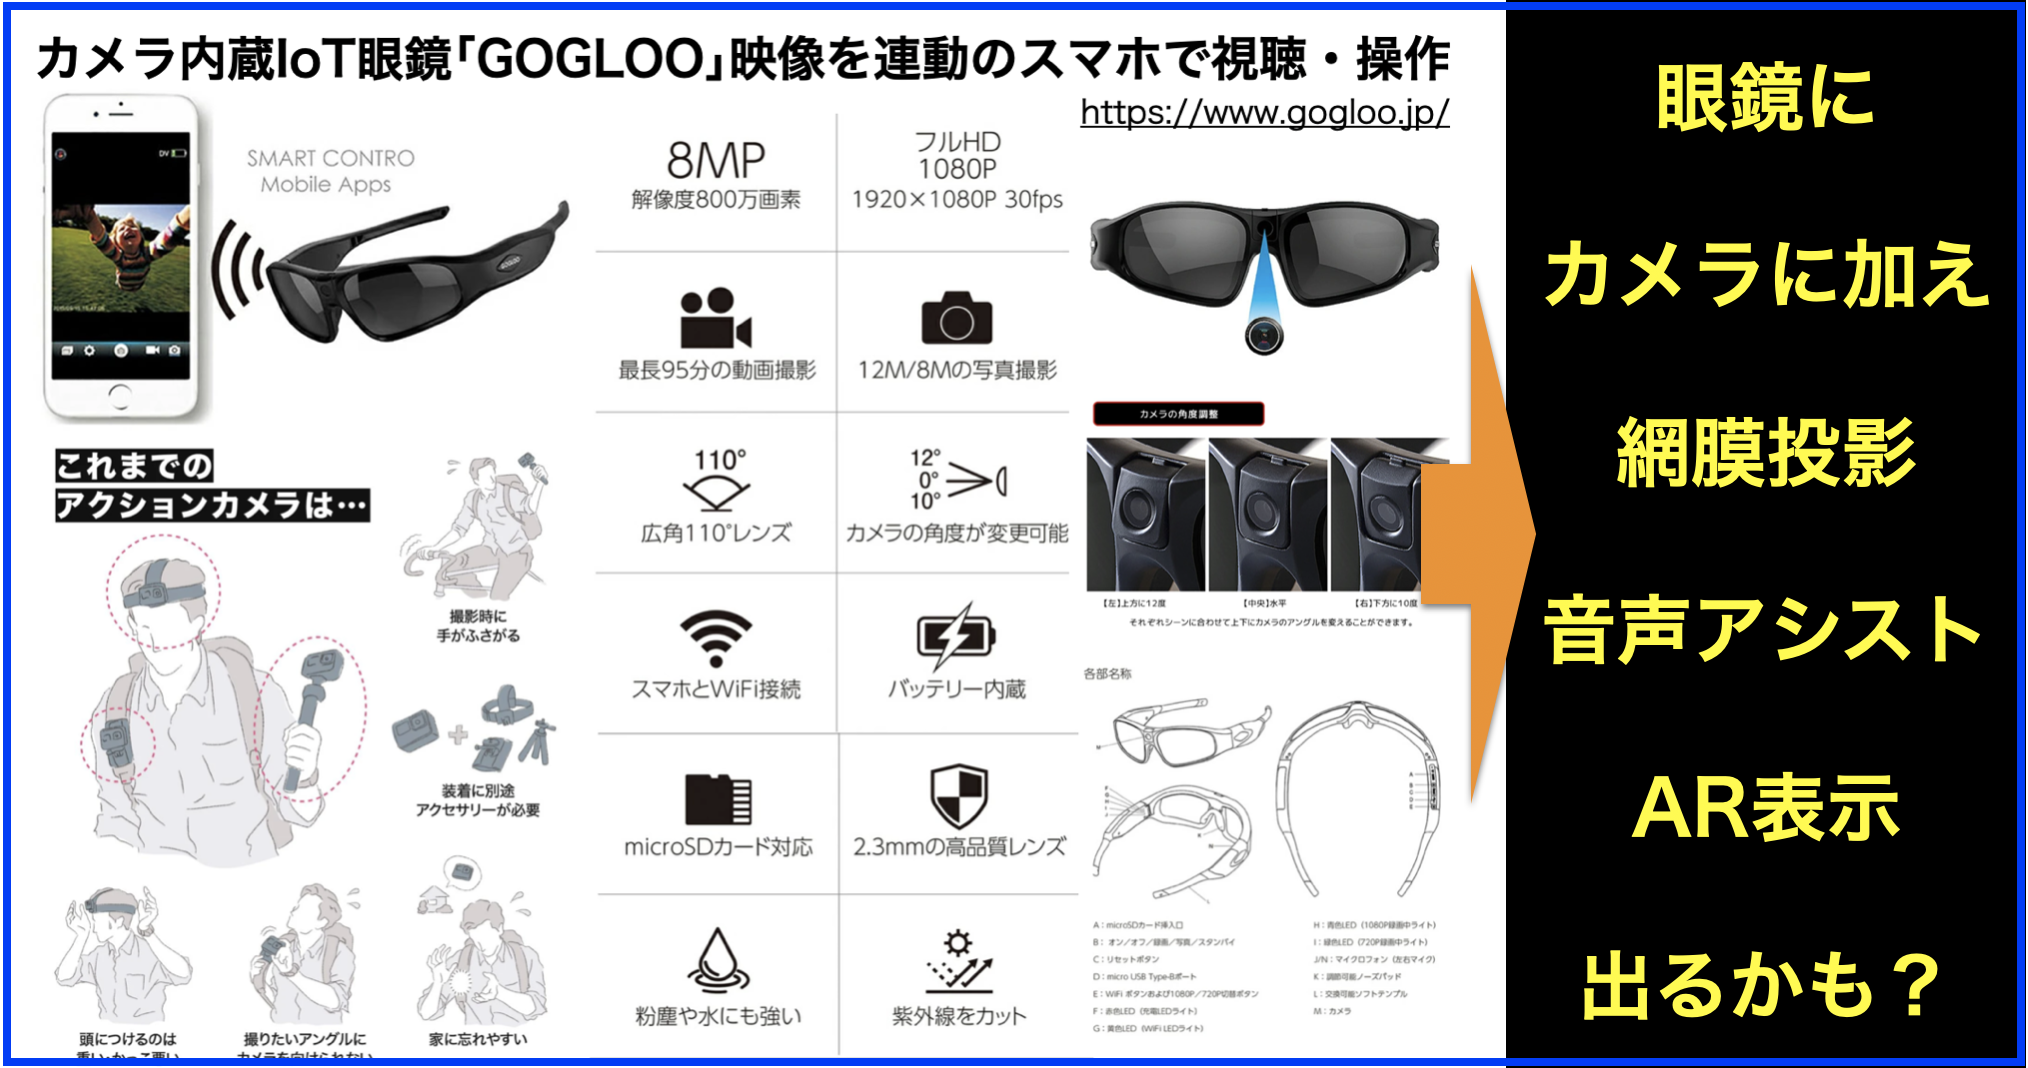 カメラ内蔵IoT眼鏡｢GOGLOO｣の映像を連動したスマホで視聴